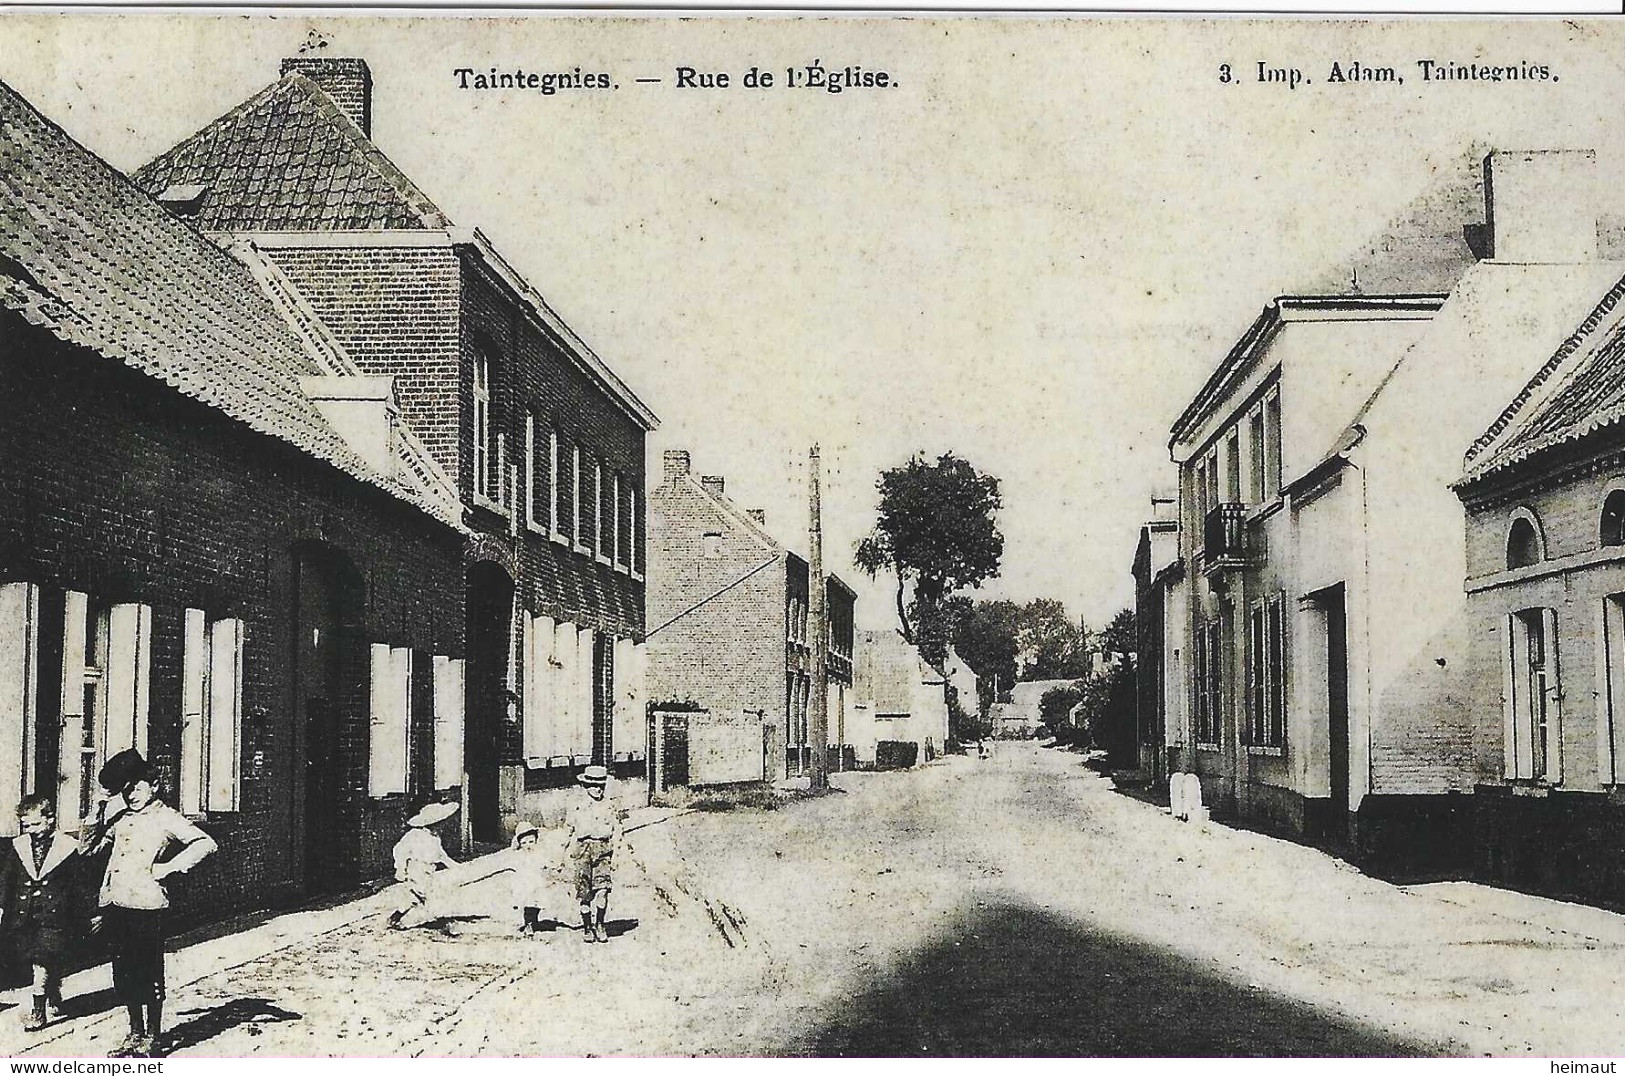 Rumes - Taintegnies - PHOTO D'une Ancienne Carte Postale - Rue De L'Eglise - Rumes